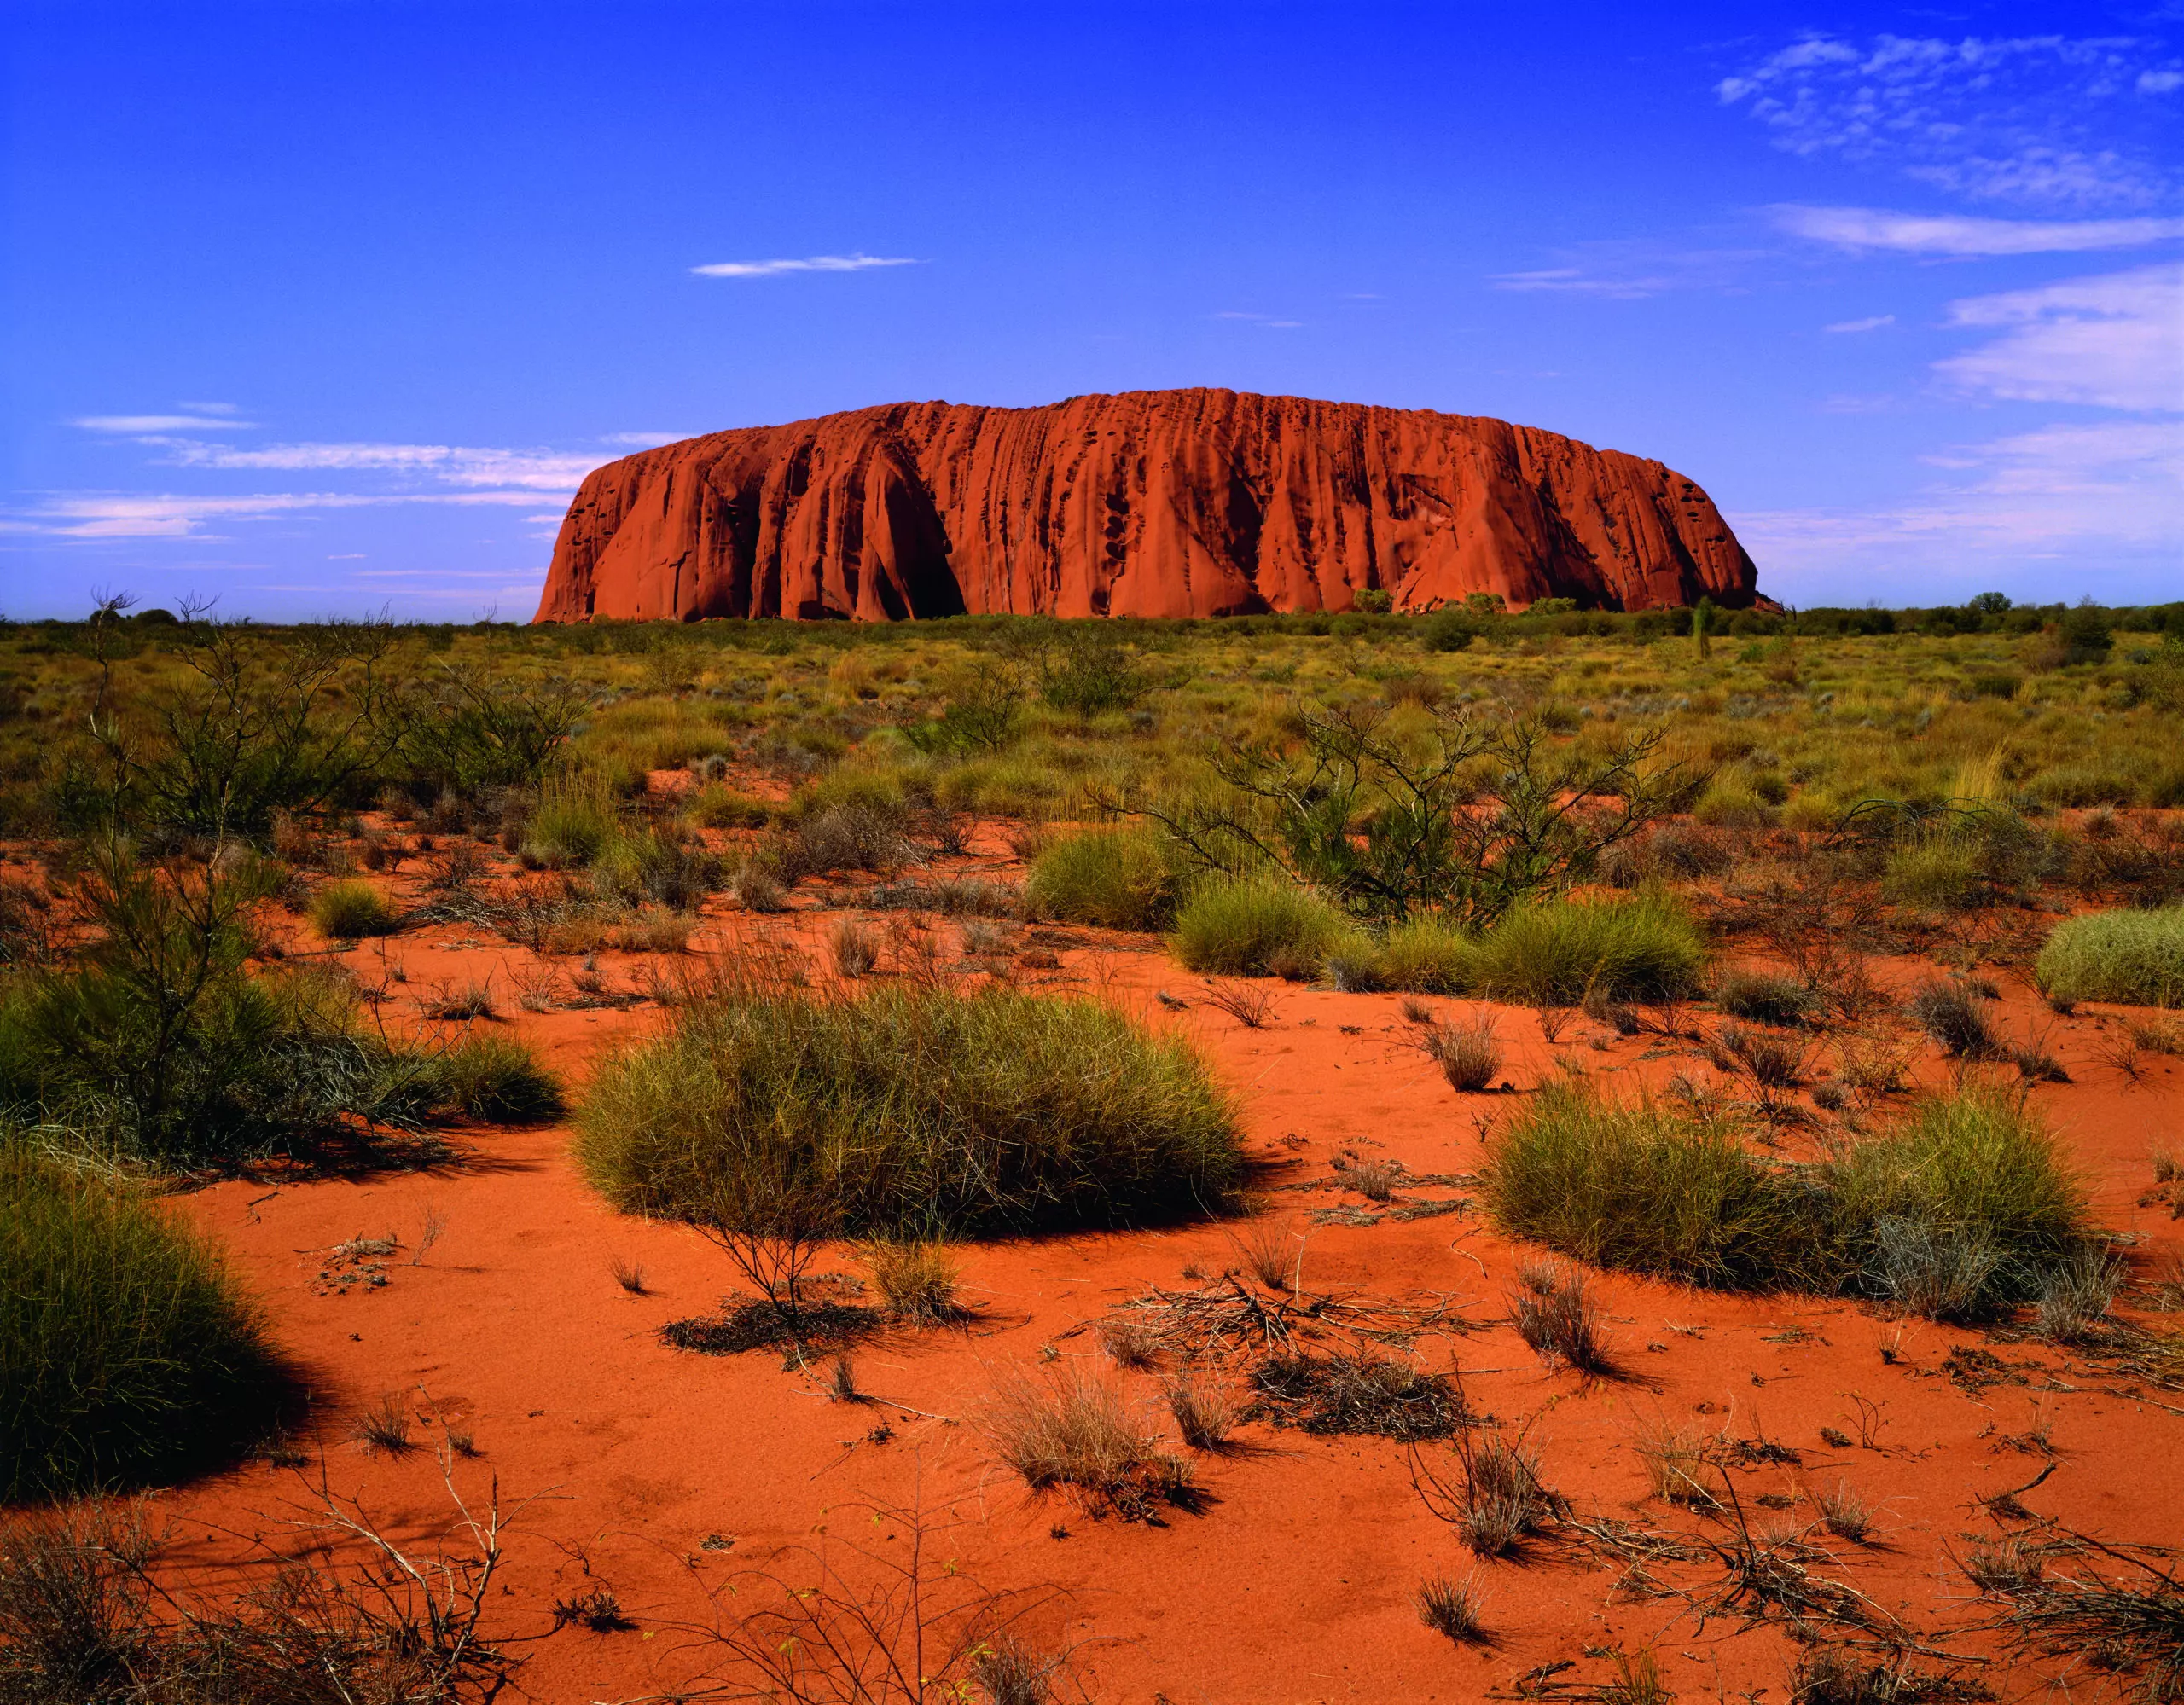 Wandbild (5722) Uluru by Friedmar Damm/HUBER IMAGES präsentiert: Natur,Landschaften,Asien,Berge